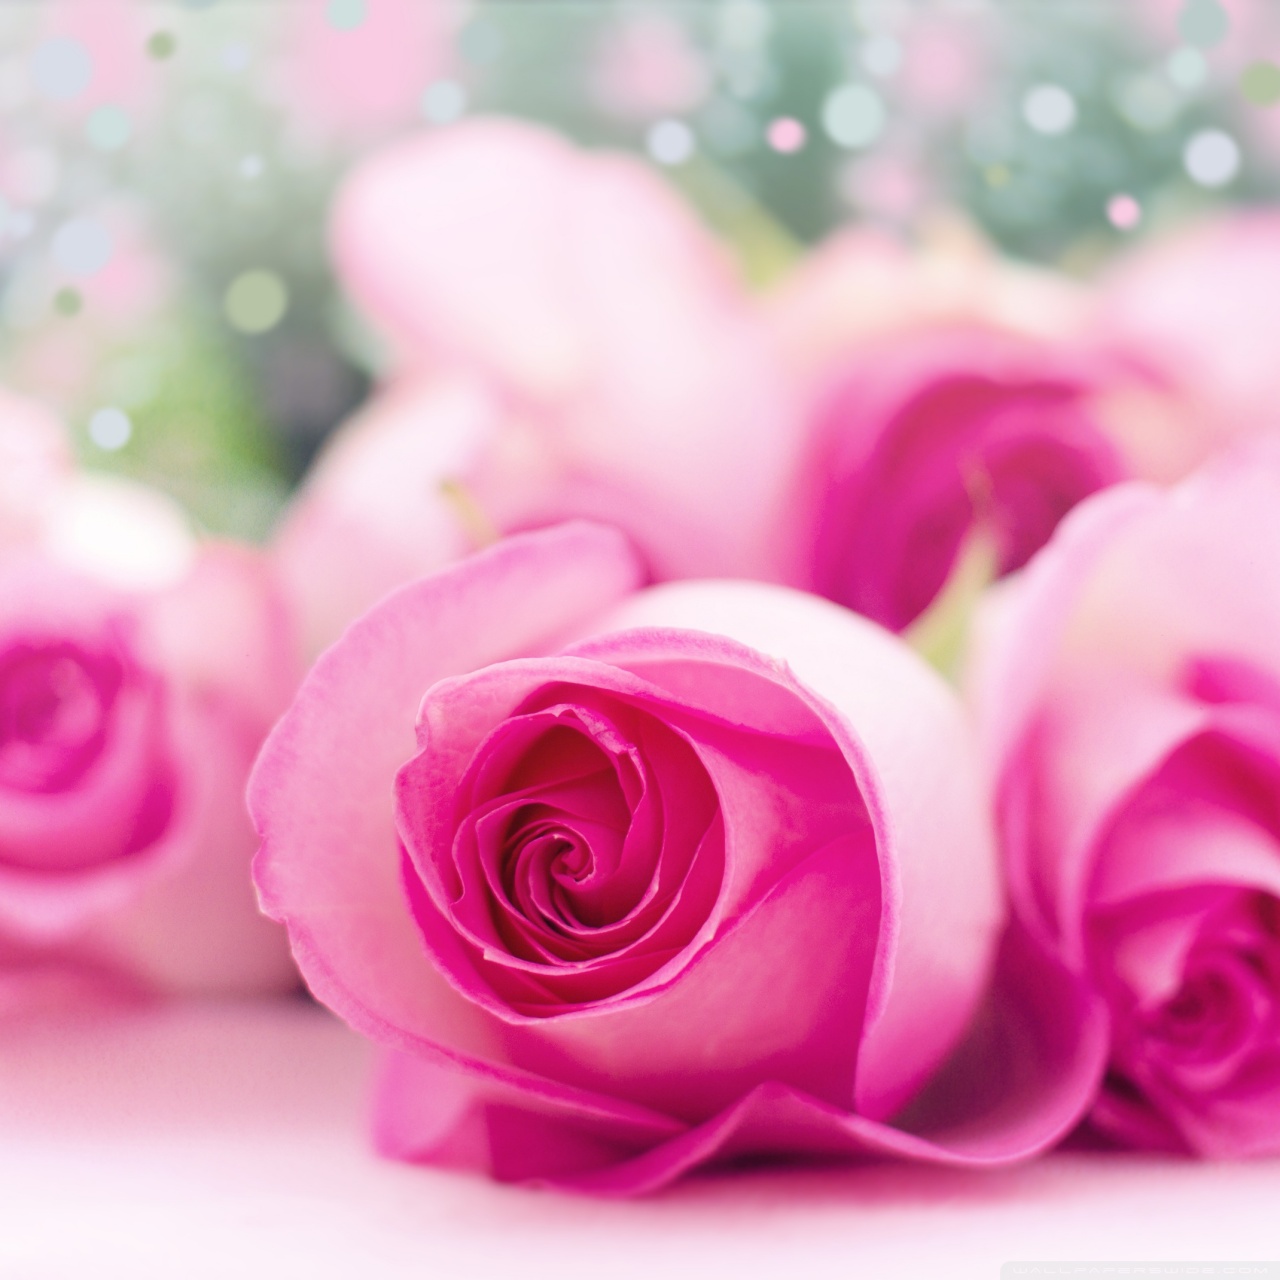 Light Pink Roses Bokeh Ultra HD Desktop Background Wallpaper for 4K UHD ...